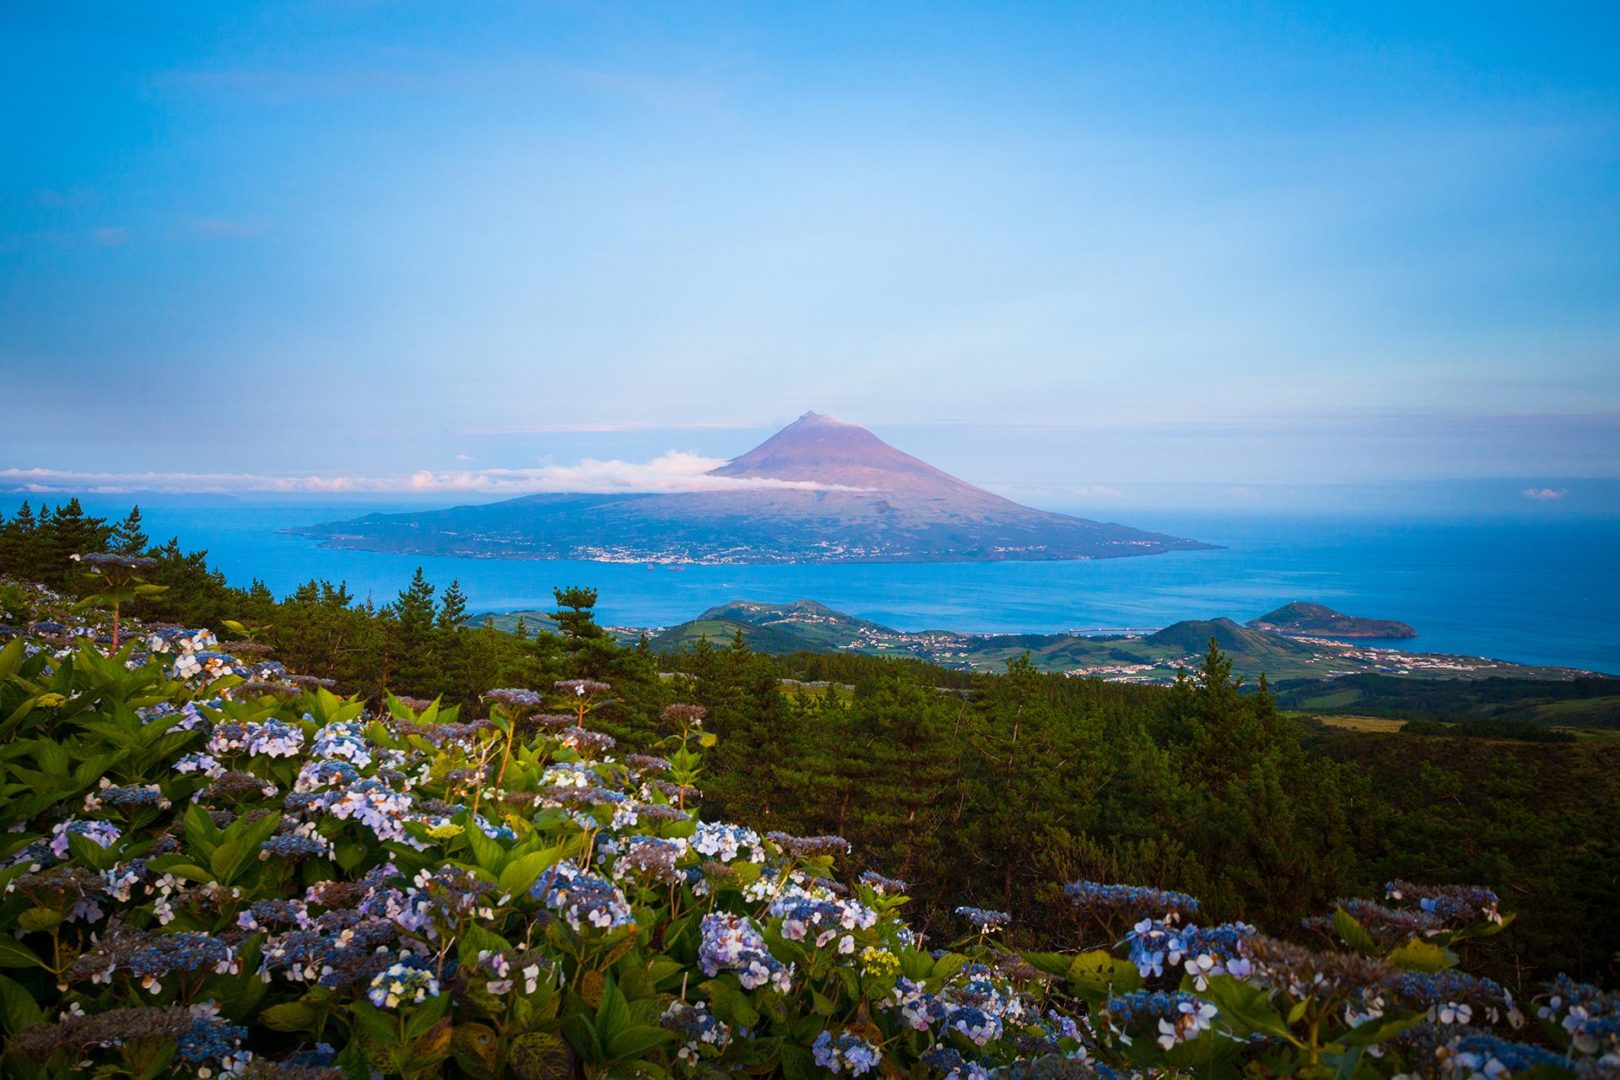 Voyage organisé aux Açores et visite de Pico Island